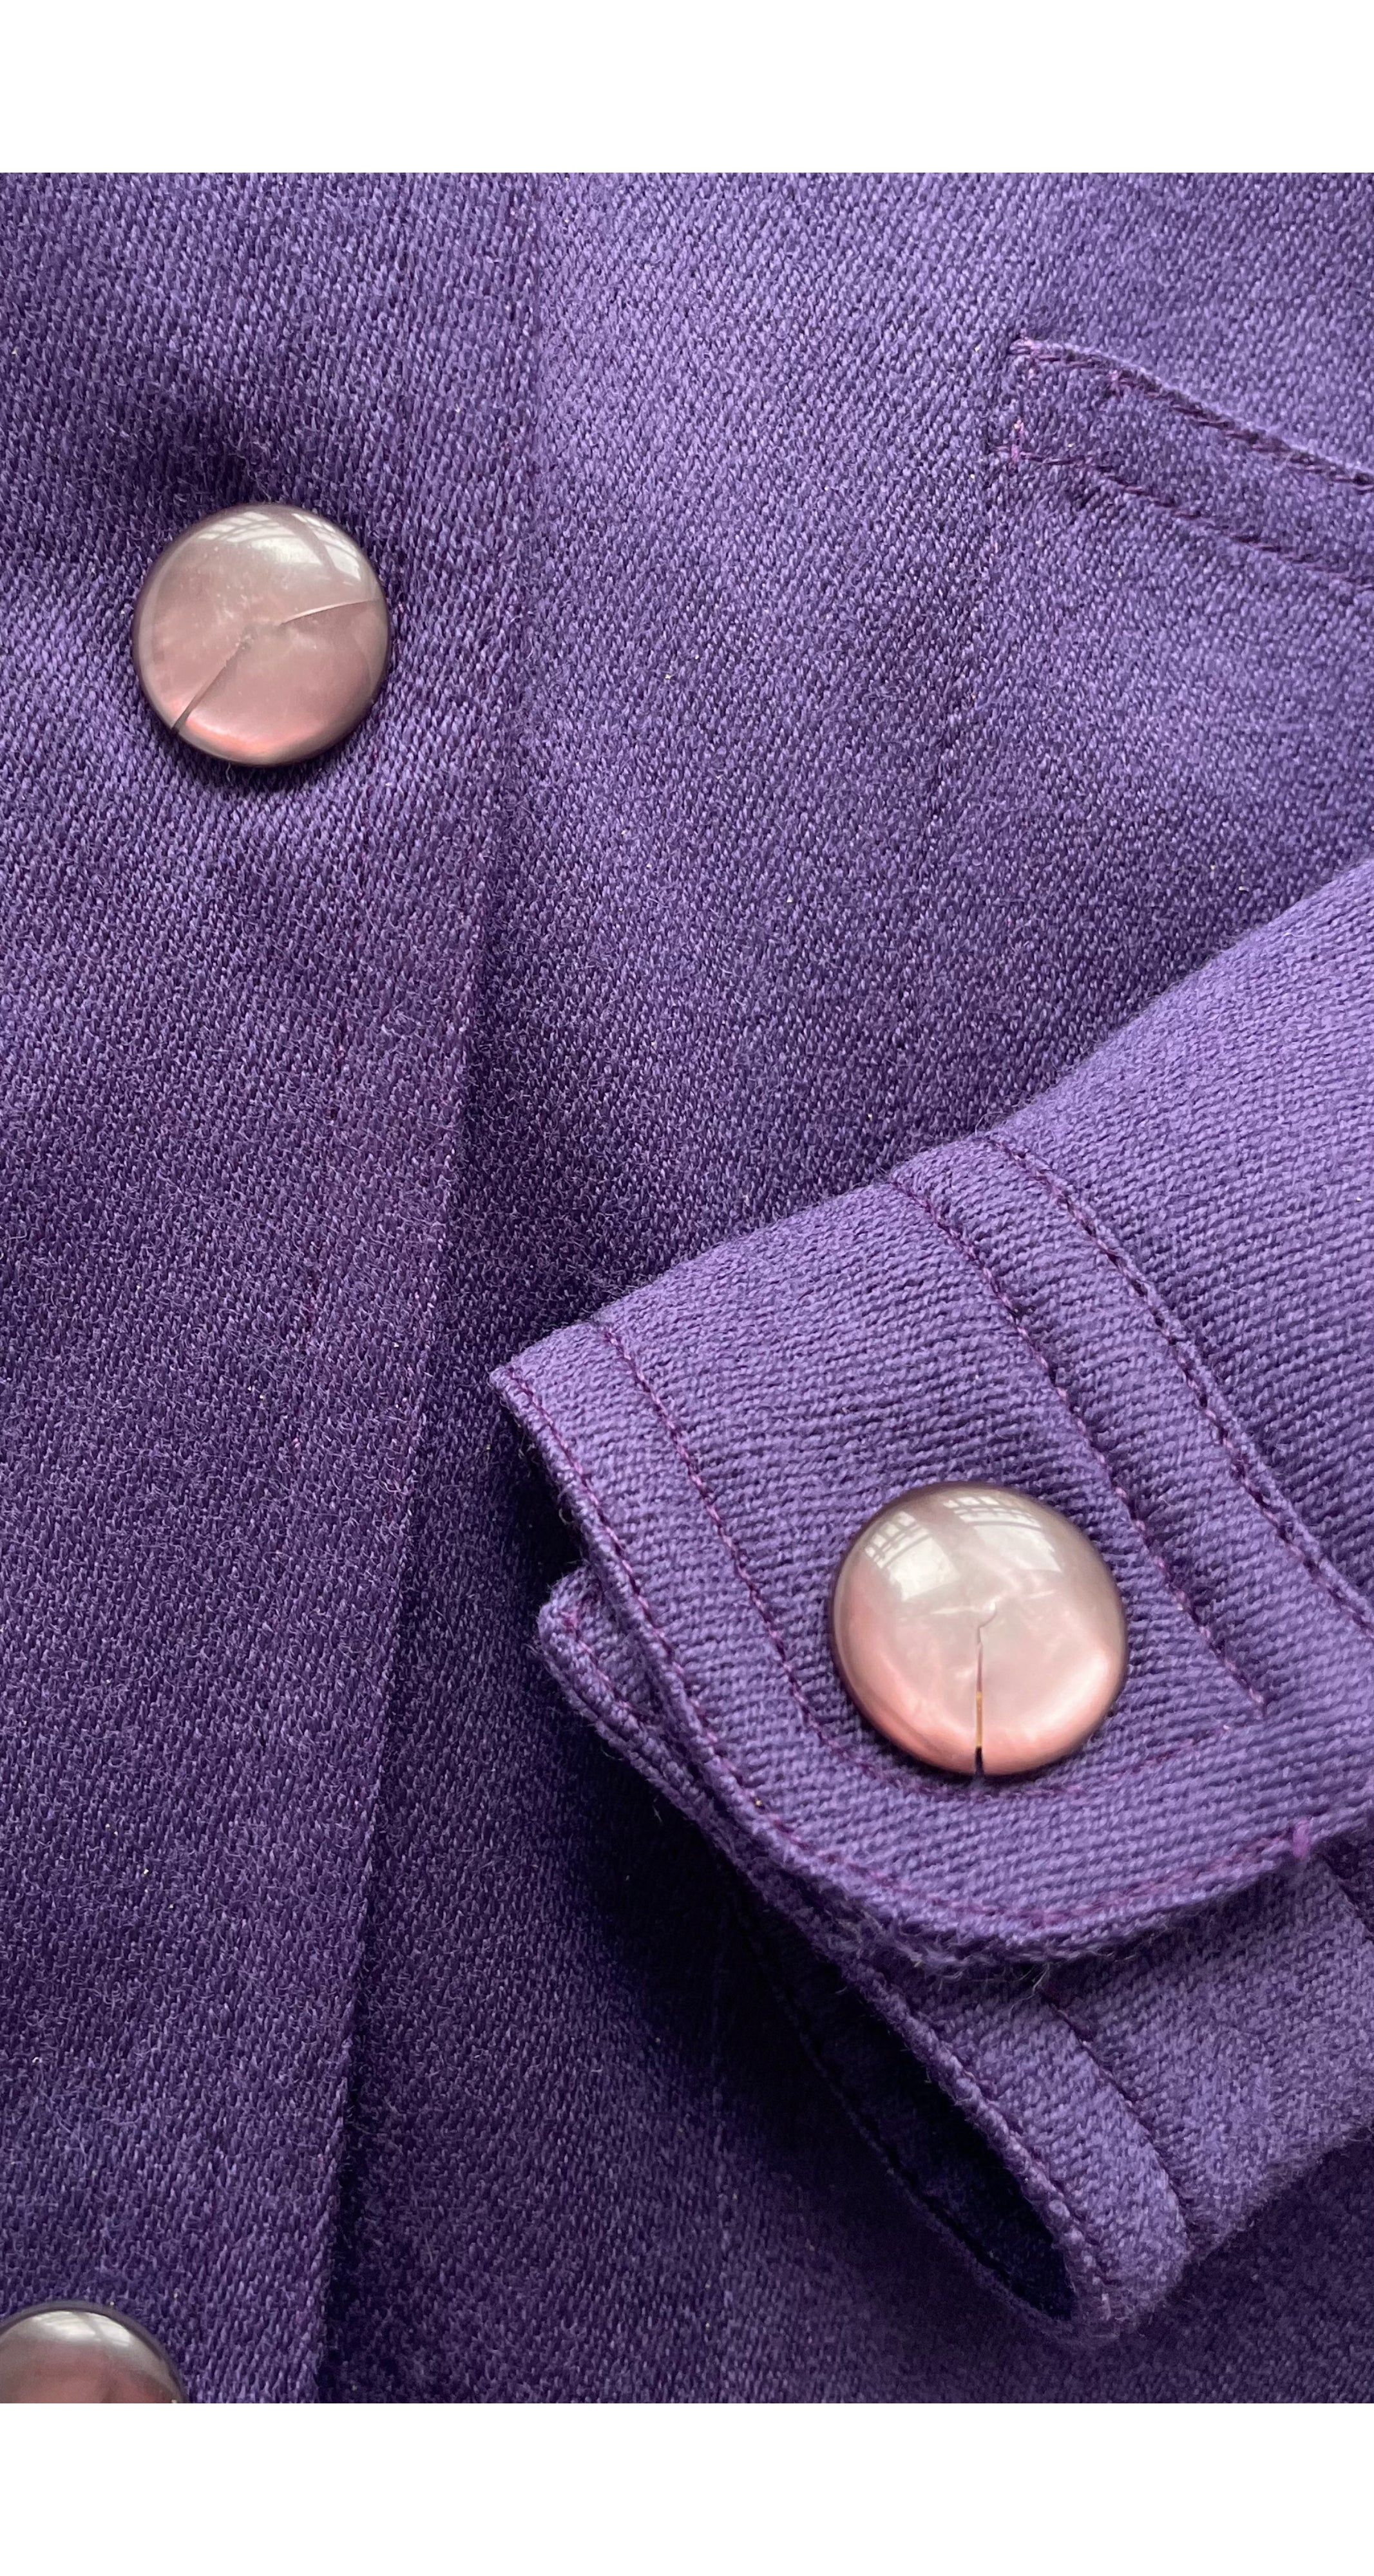 1980s Purple Wool Jacket & Trouser Suit